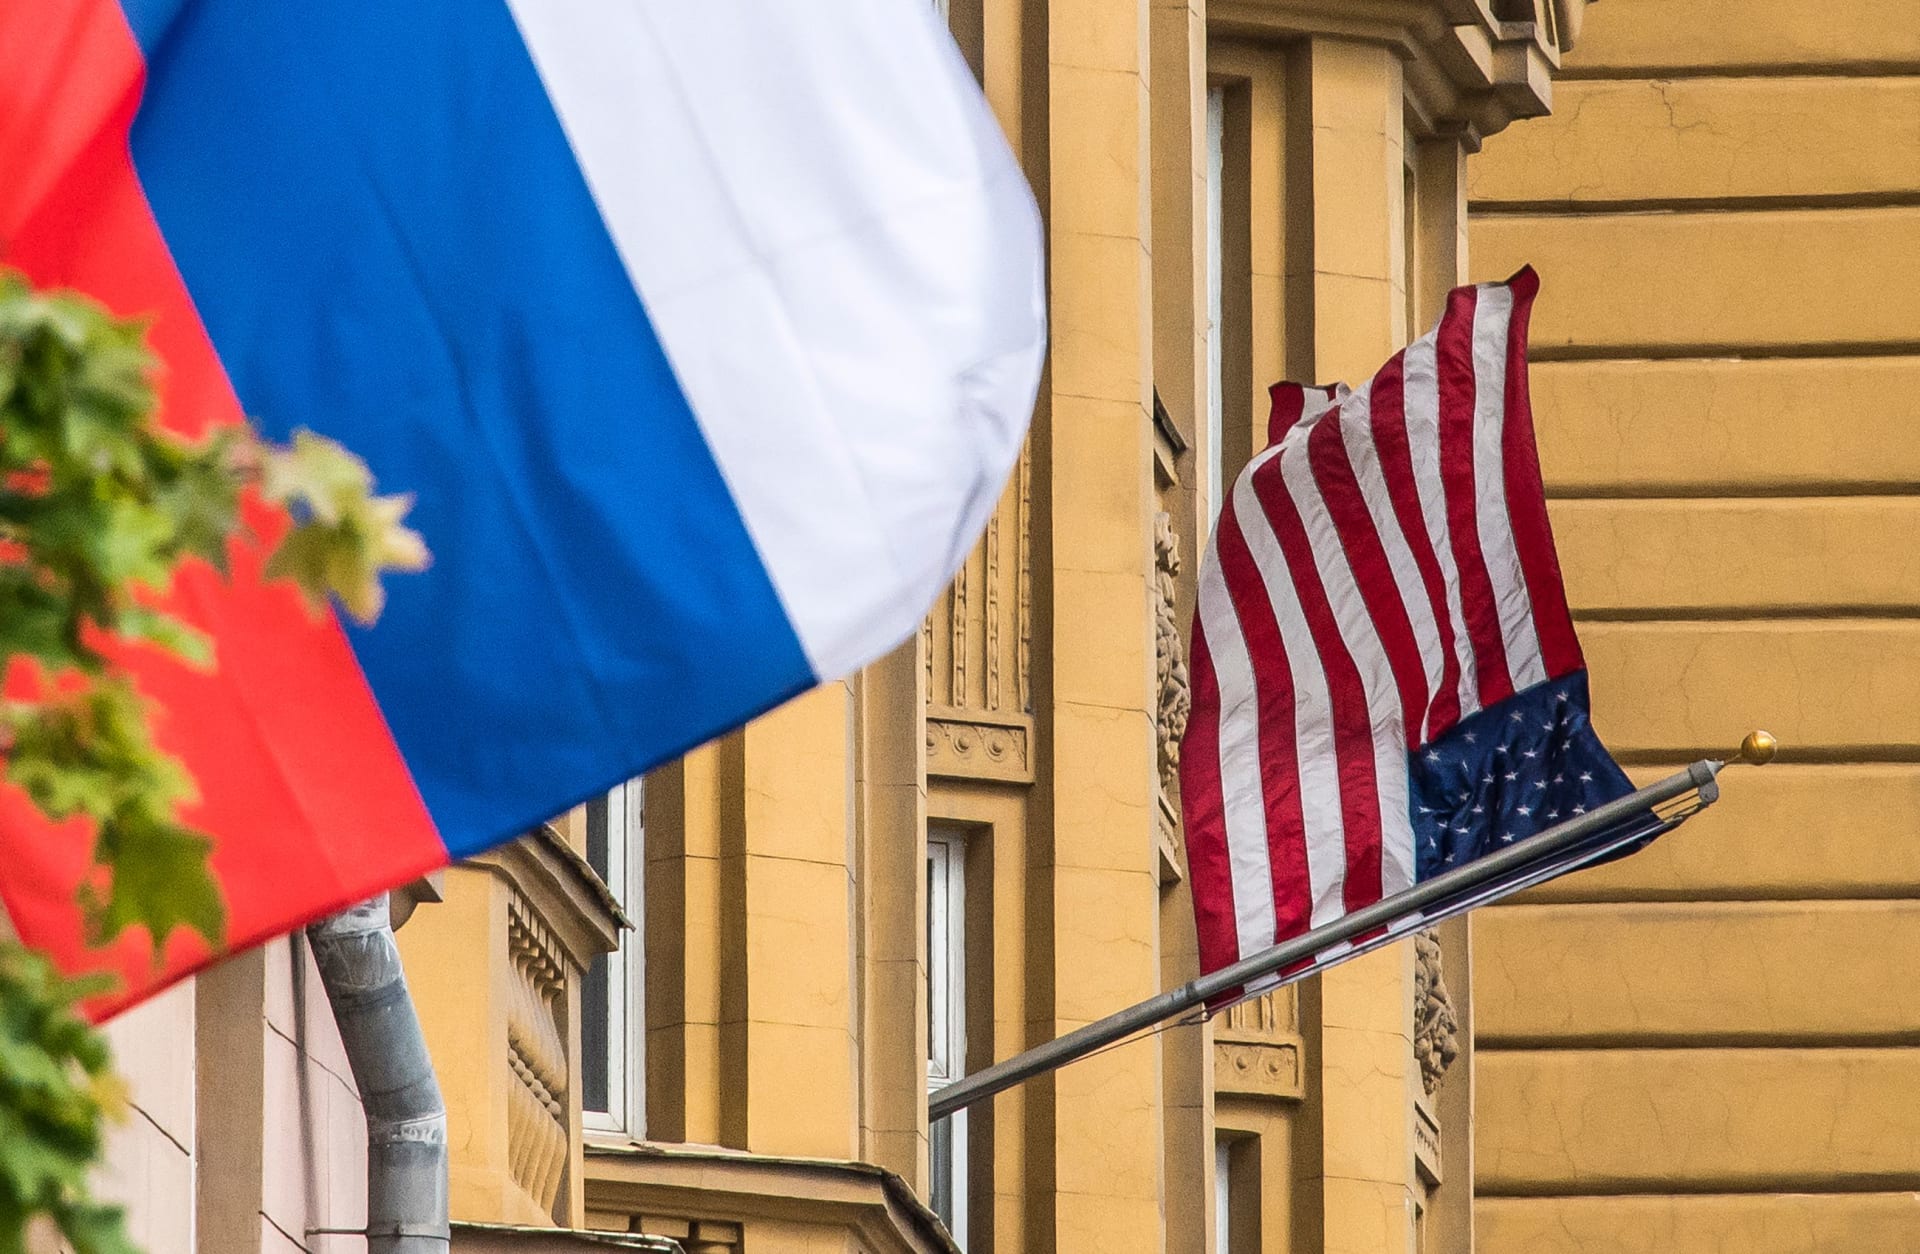 أمريكا تطرد دبلوماسيين روسيين.. وتوجه "رسالة تحذير" لموسكو بشأن "الإجراءات غير المقبولة"